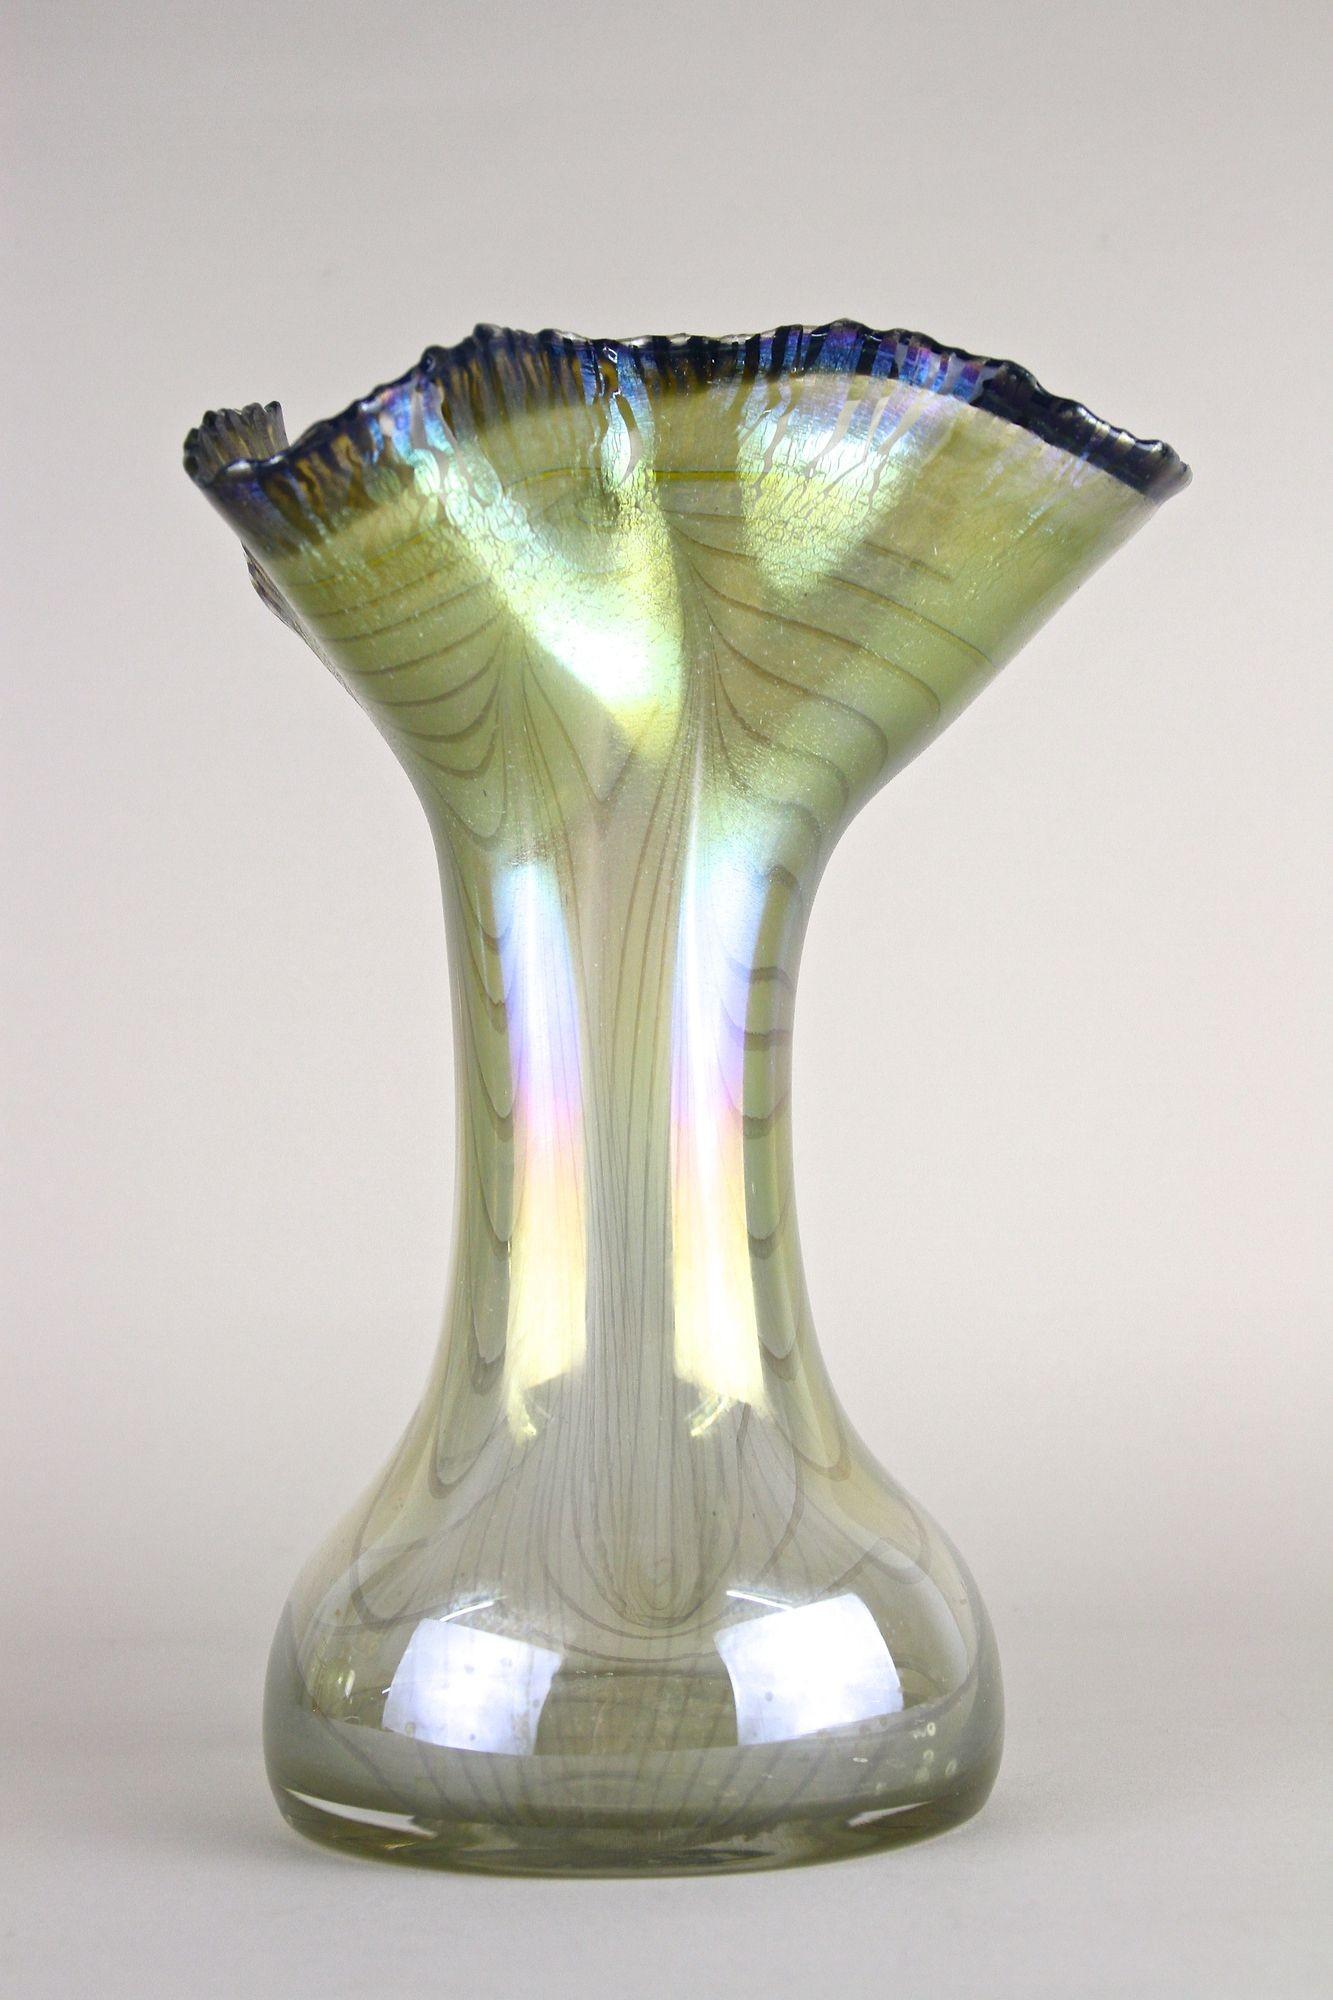 Asombroso jarrón de cristal del siglo XX, absolutamente raro, del famoso artista alemán del cristal Erwin Eisch (1927 - 2022), fabricado en 1982. El nombre de Erwin Eisch está indisolublemente unido al movimiento internacional del vidrio de estudio,